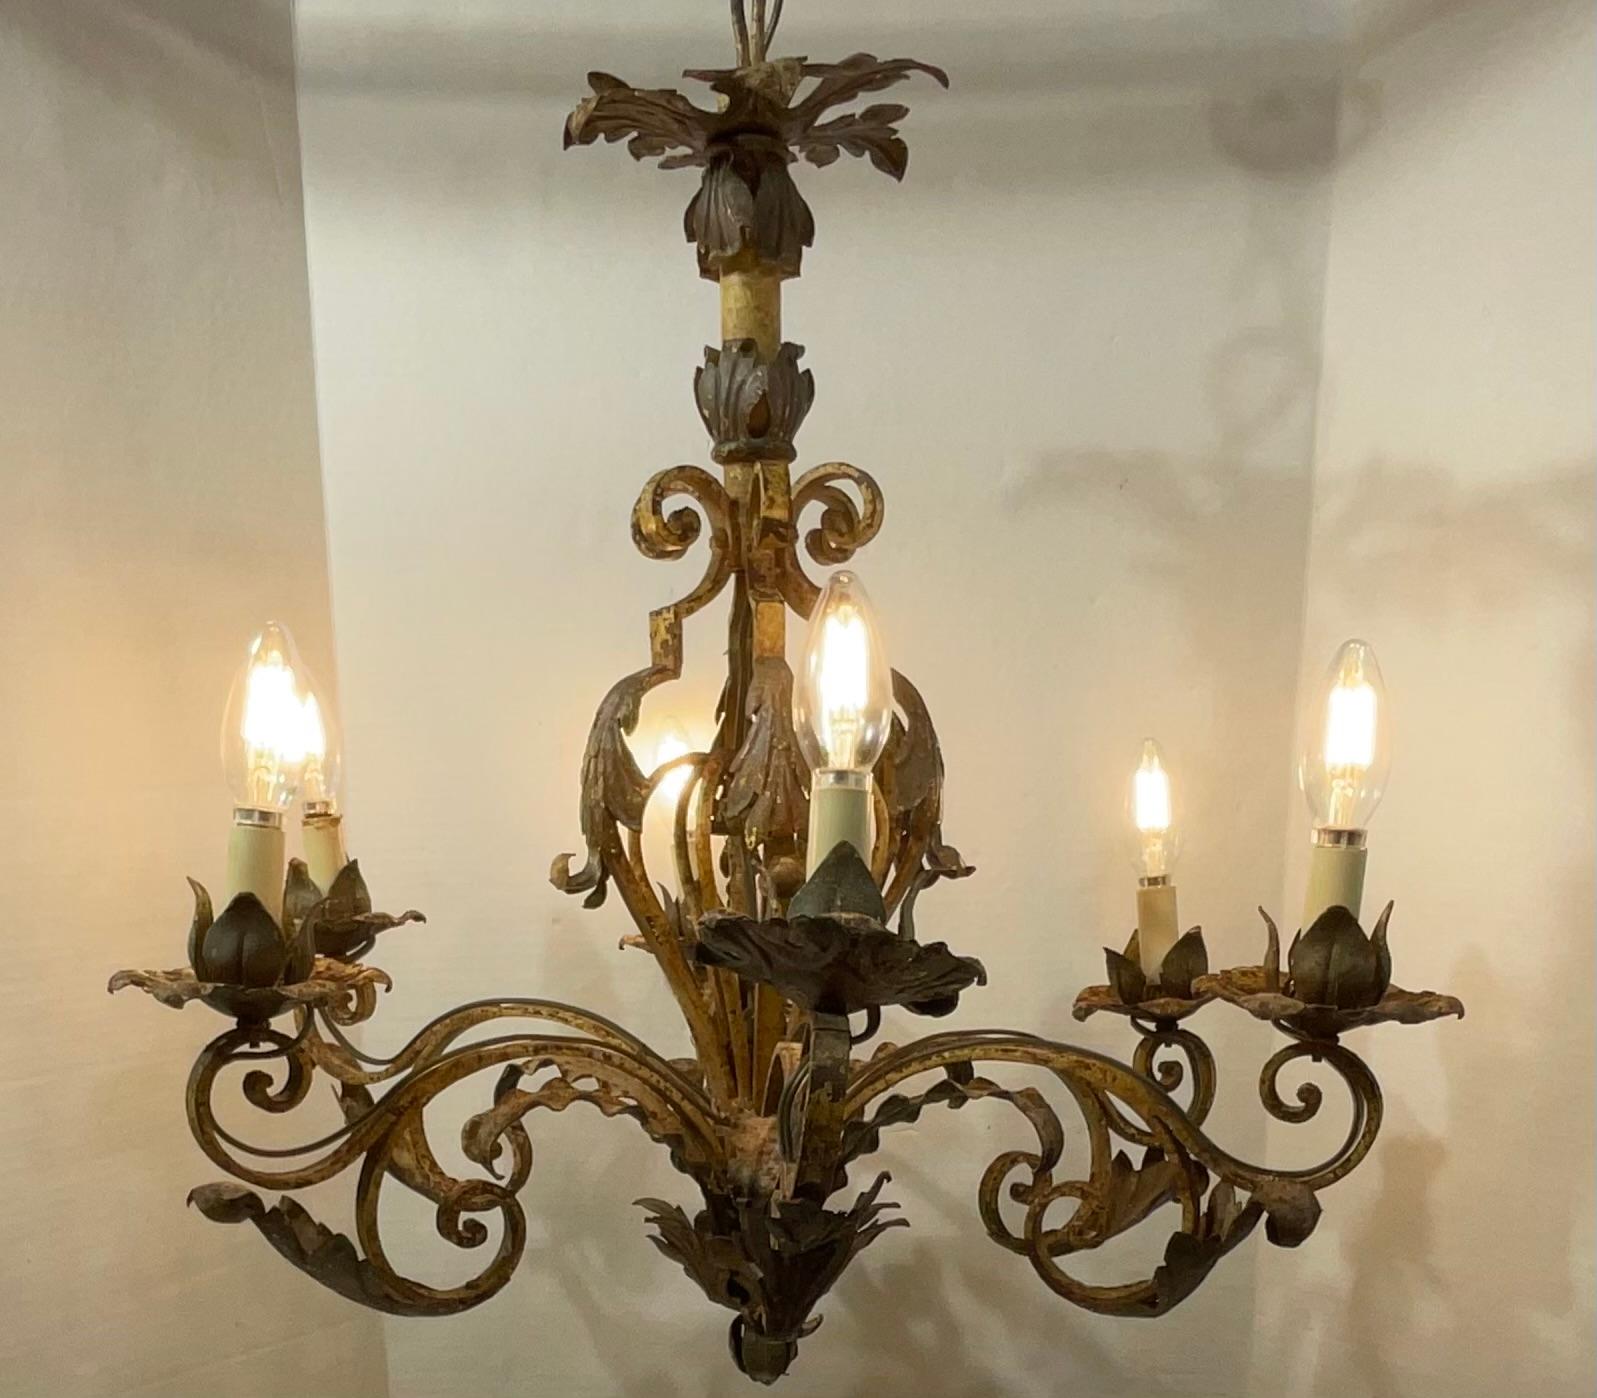 Elegant Lustre à six branches en fer forgé à la main, style ancien mizner ,
Superbe lustre décoratif.
